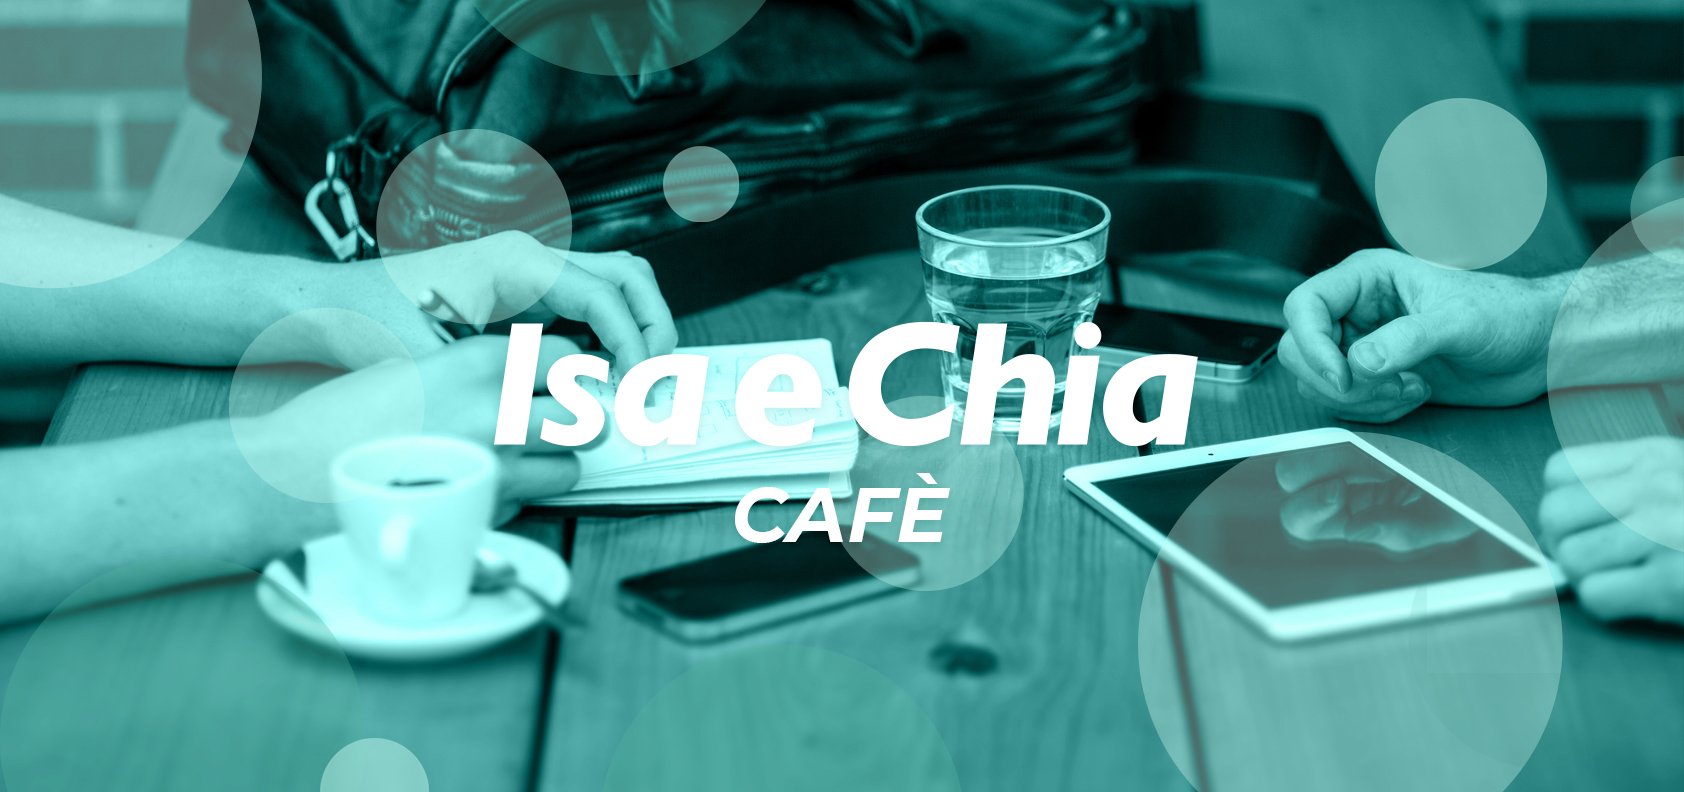 Isa e Chia Cafè, l’angolo delle chiacchiere in libertà (9/06/22)